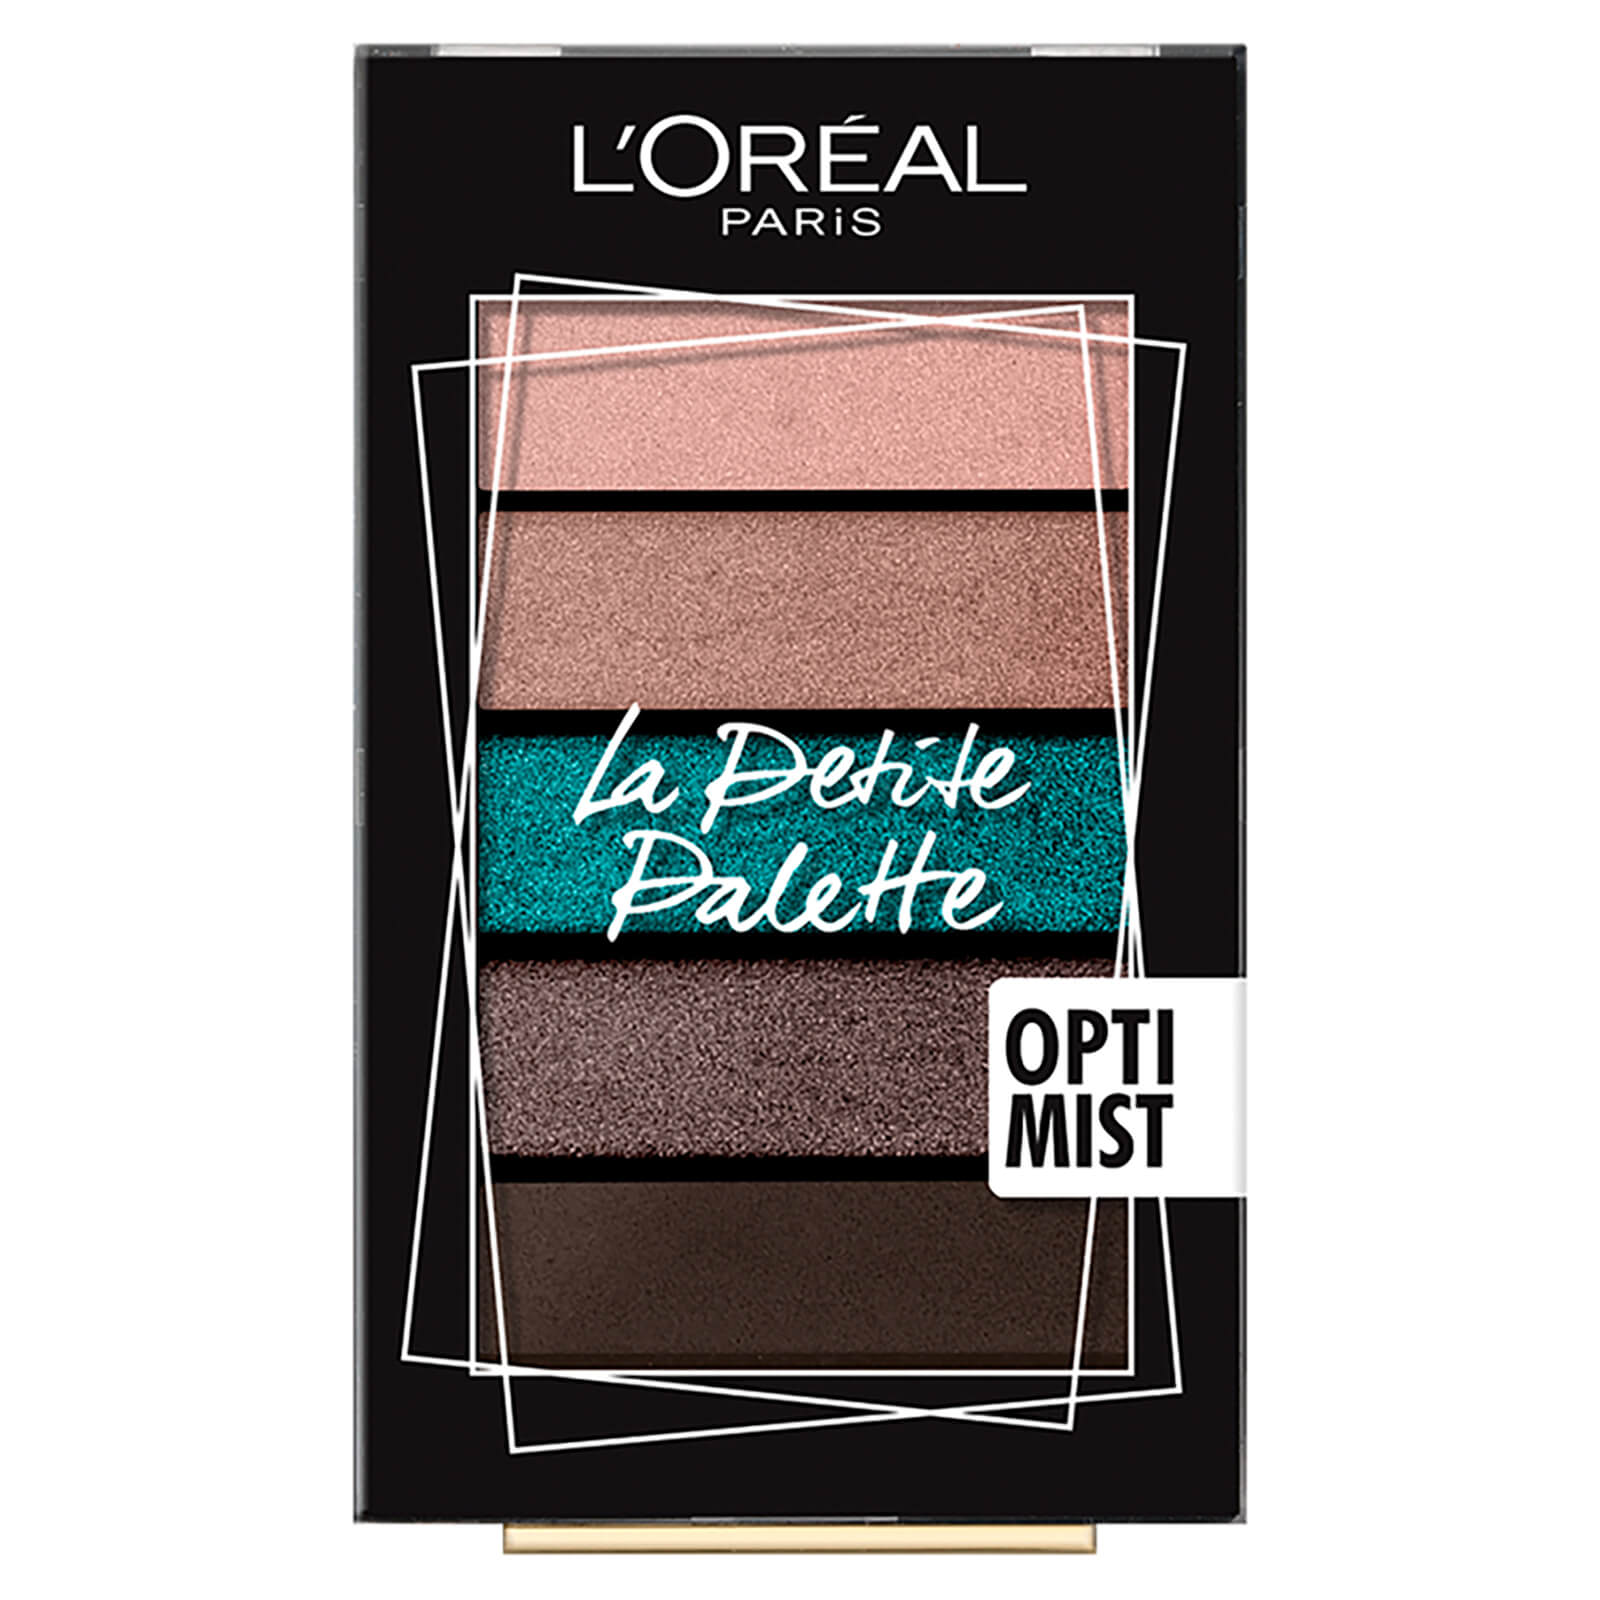 L’Oréal Paris Mini Eyeshadow Palette – 03 Optimist lookfantastic.com imagine